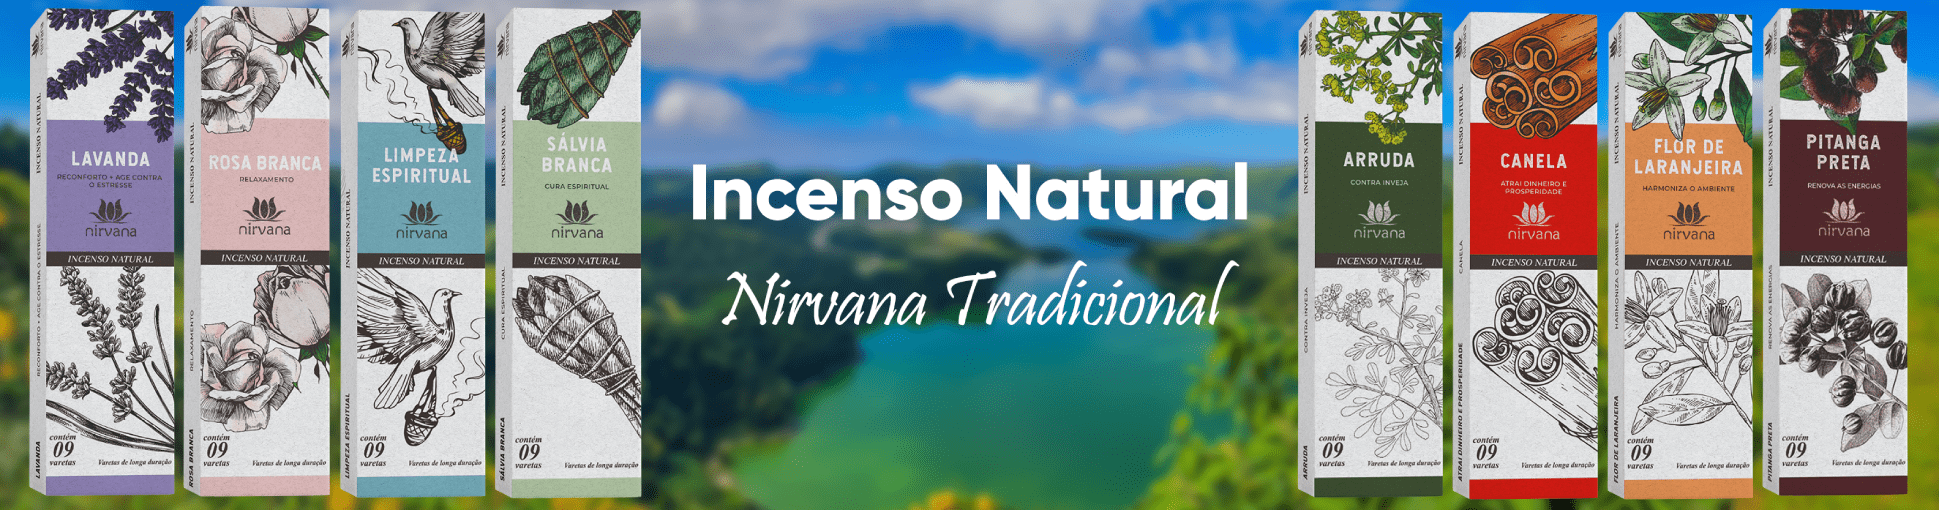 Incenso Nirvana Natural